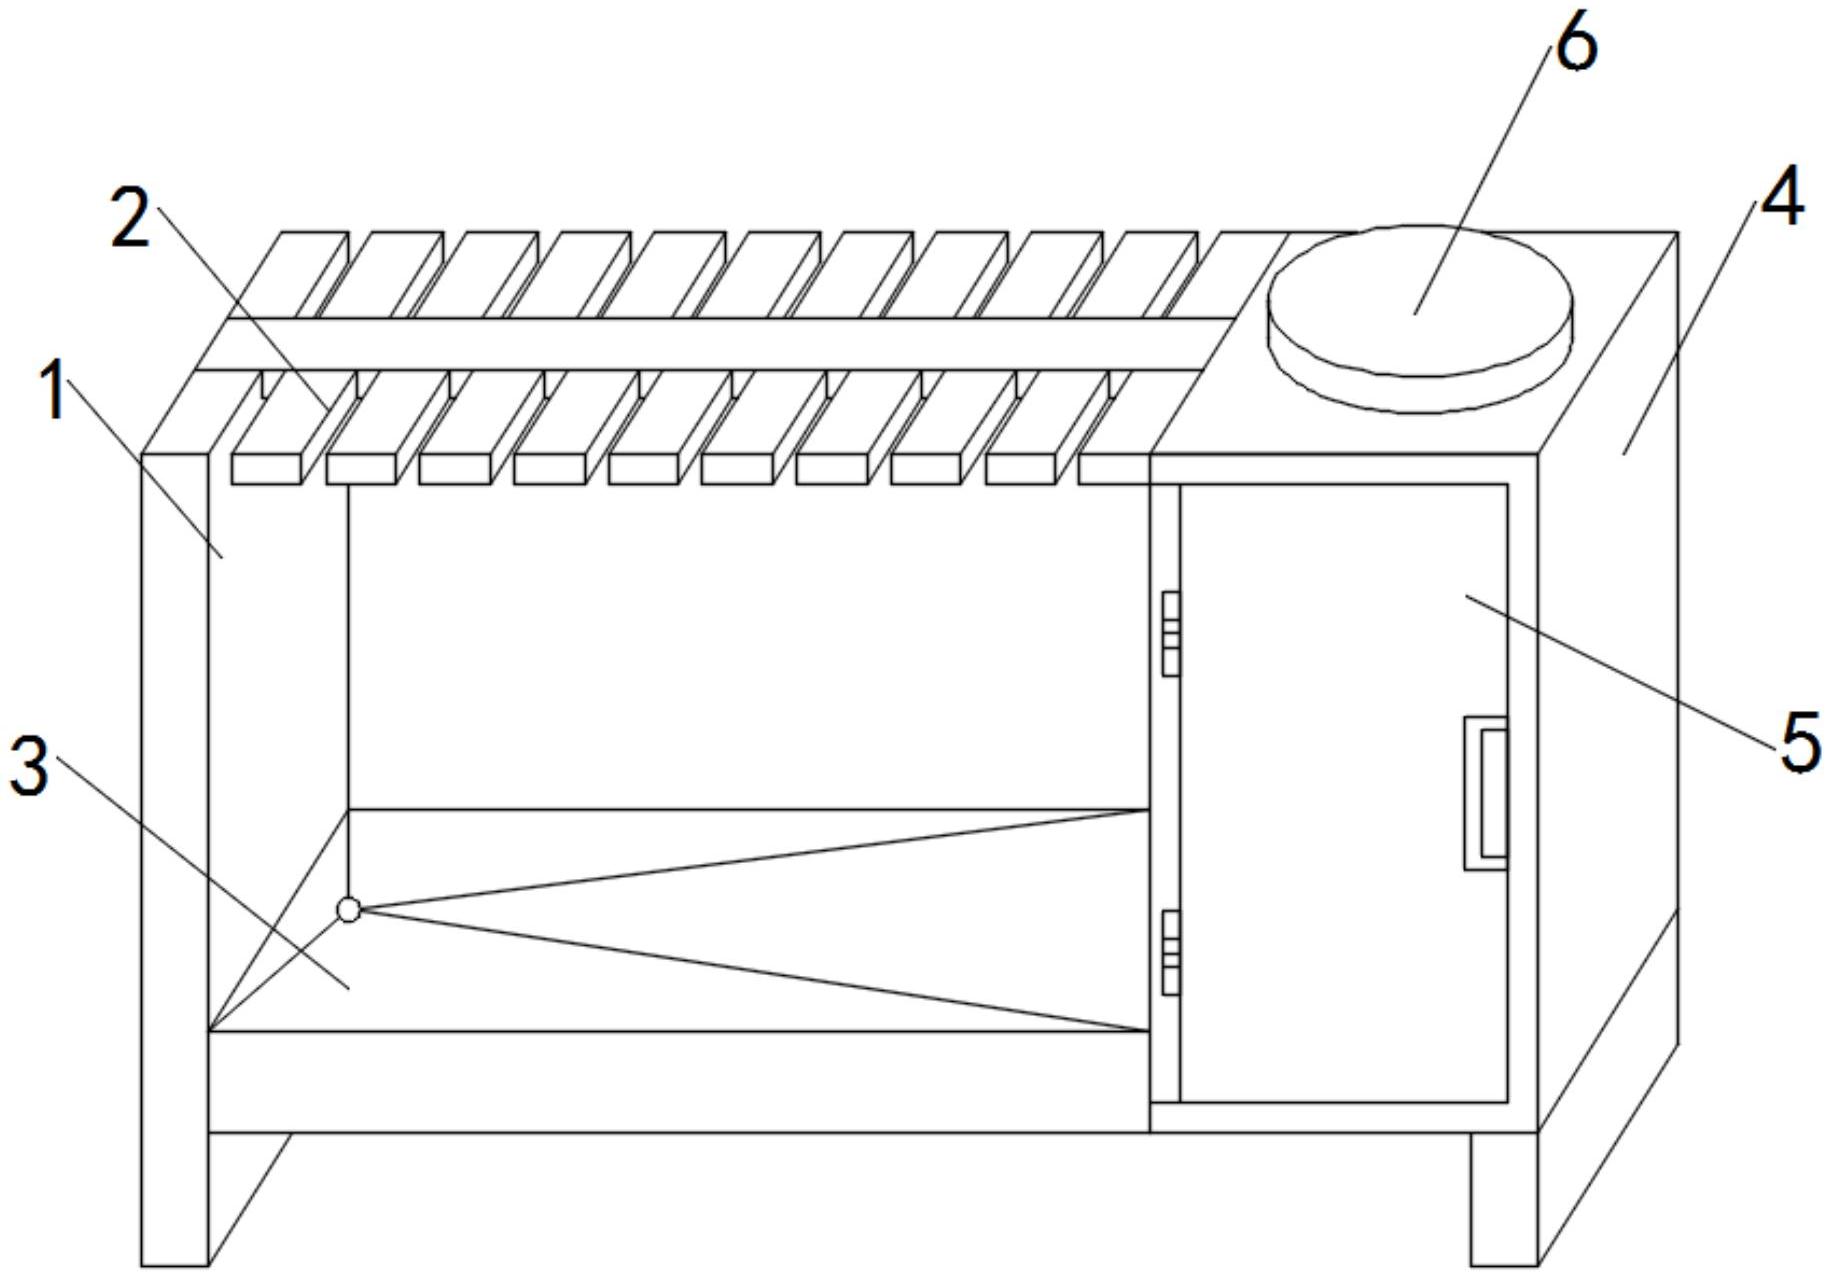 一种具有物理甩水的雨伞挂架专利图